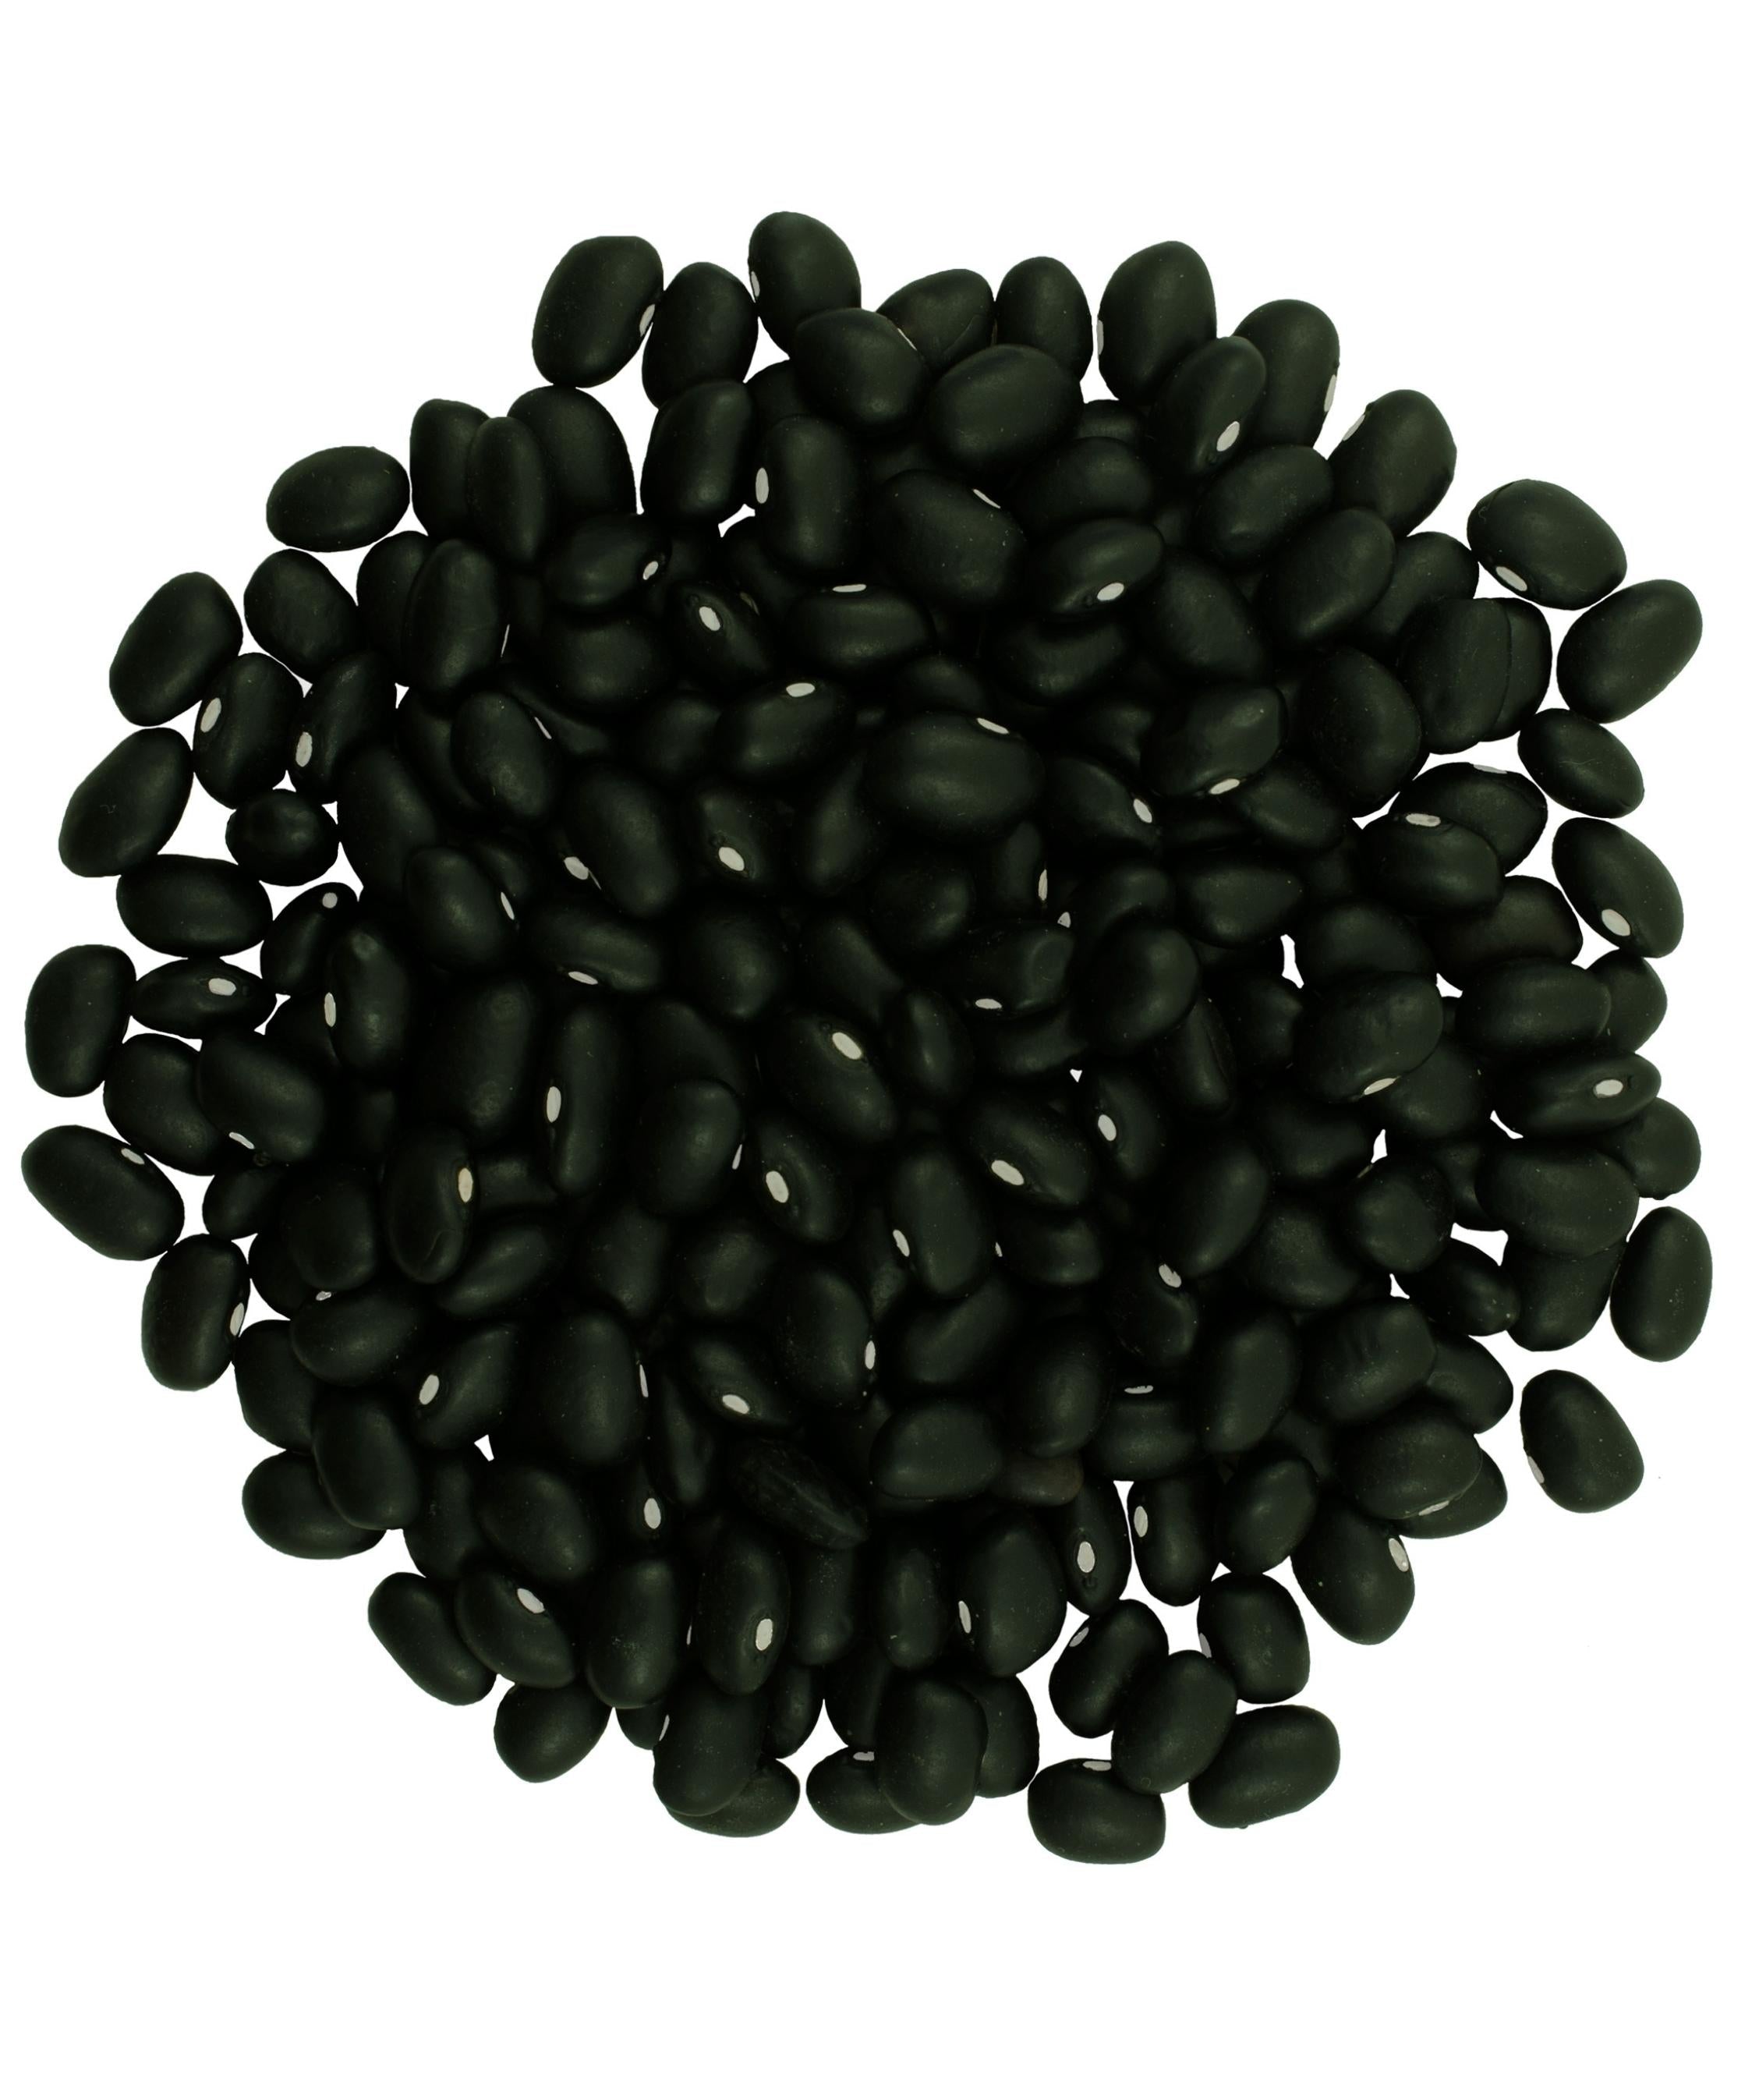 Frijoles Negros | Balde de 25 libras